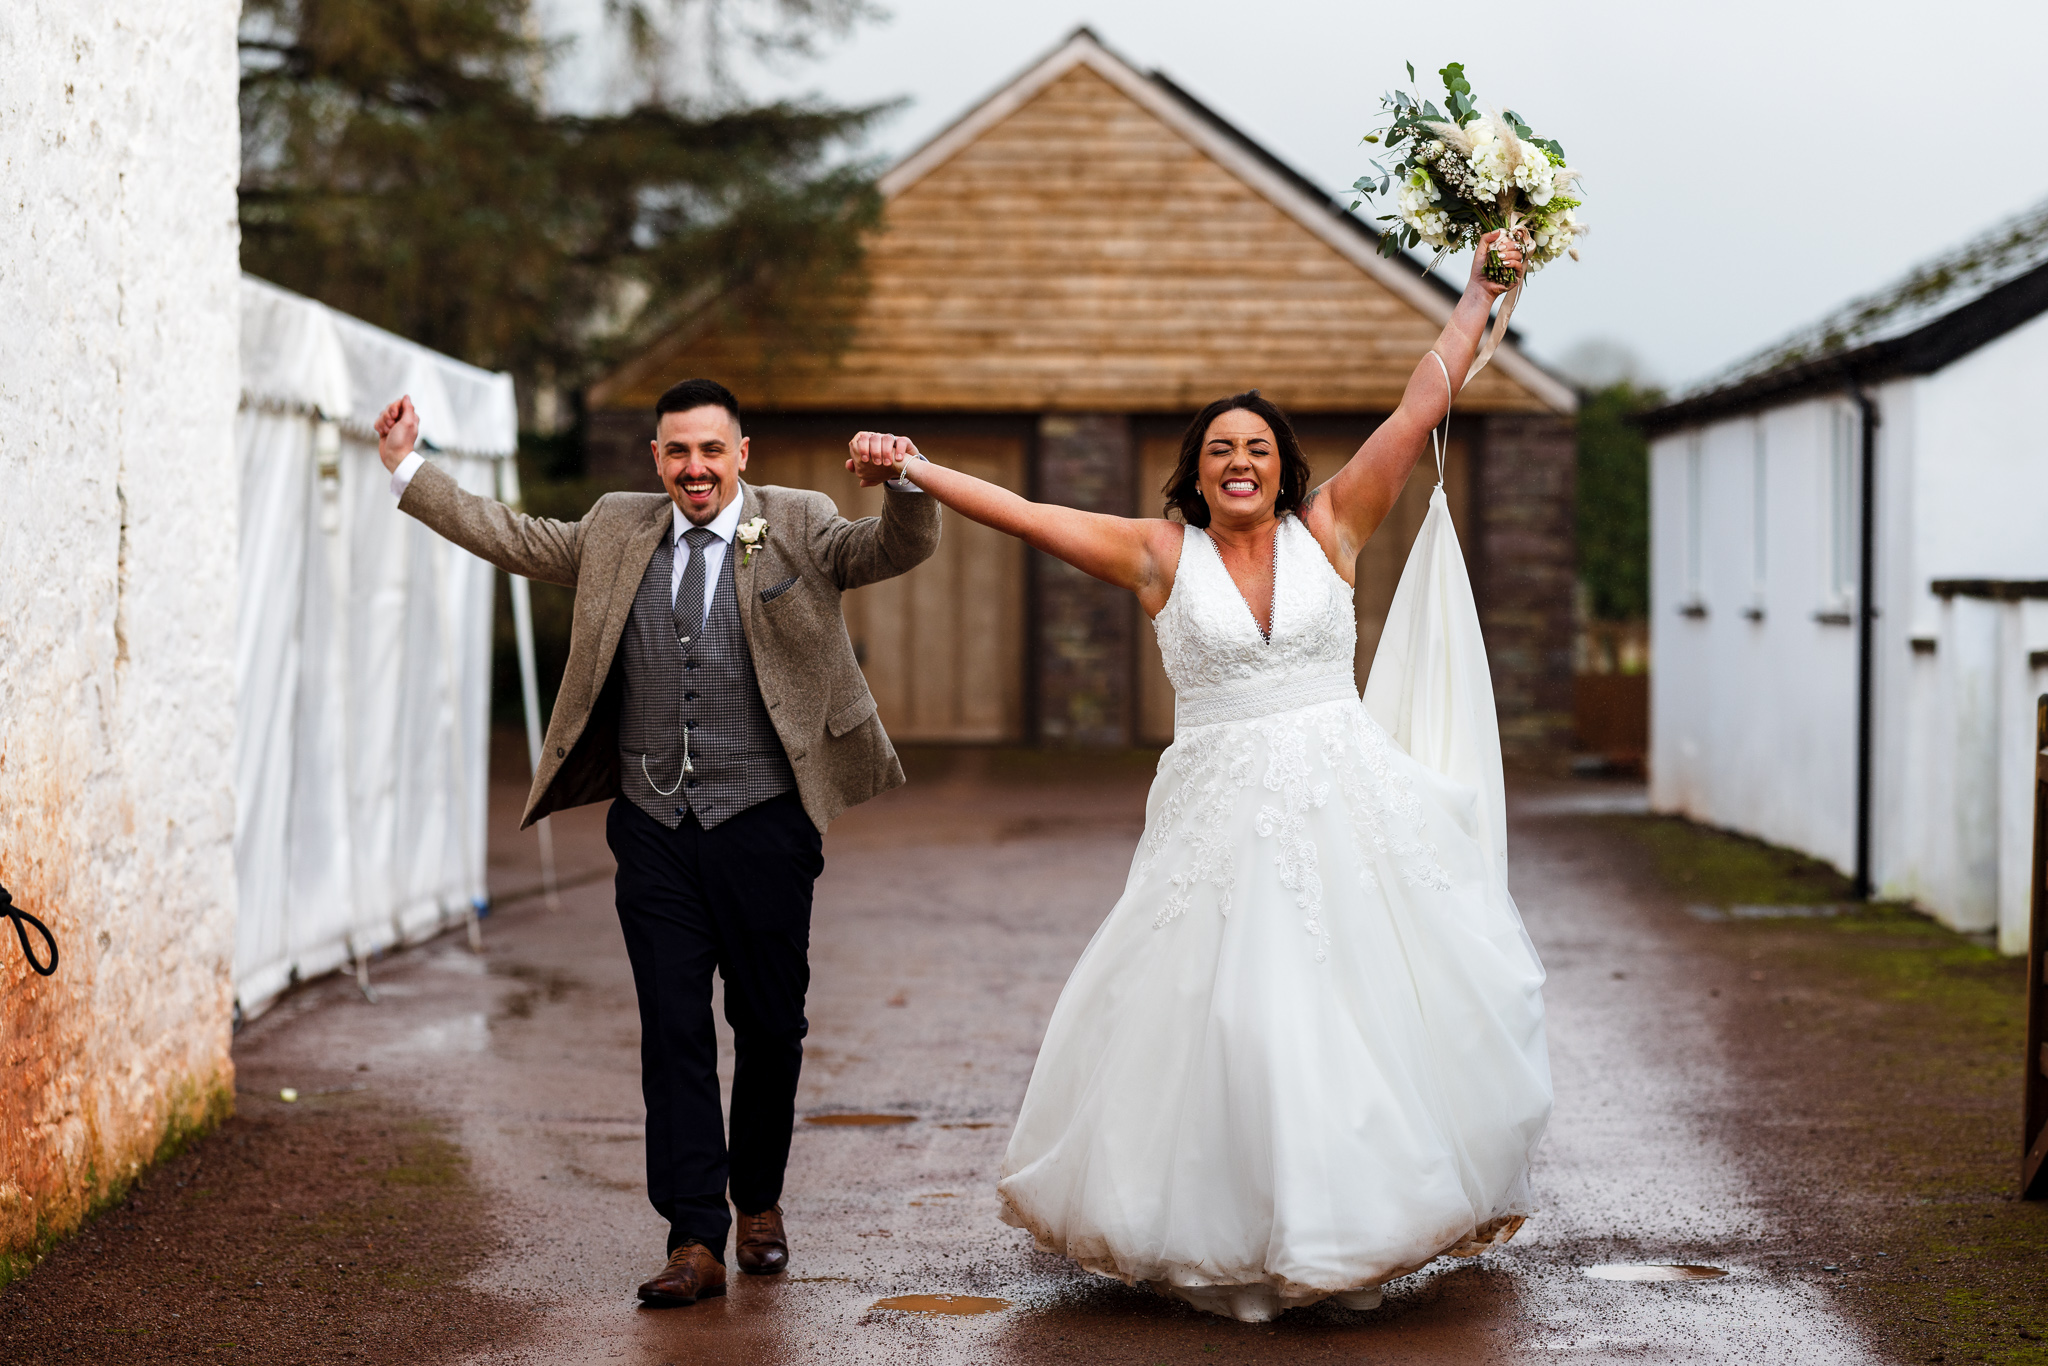 The Barn at Brynich Wedding - Wedding Photographer Wales